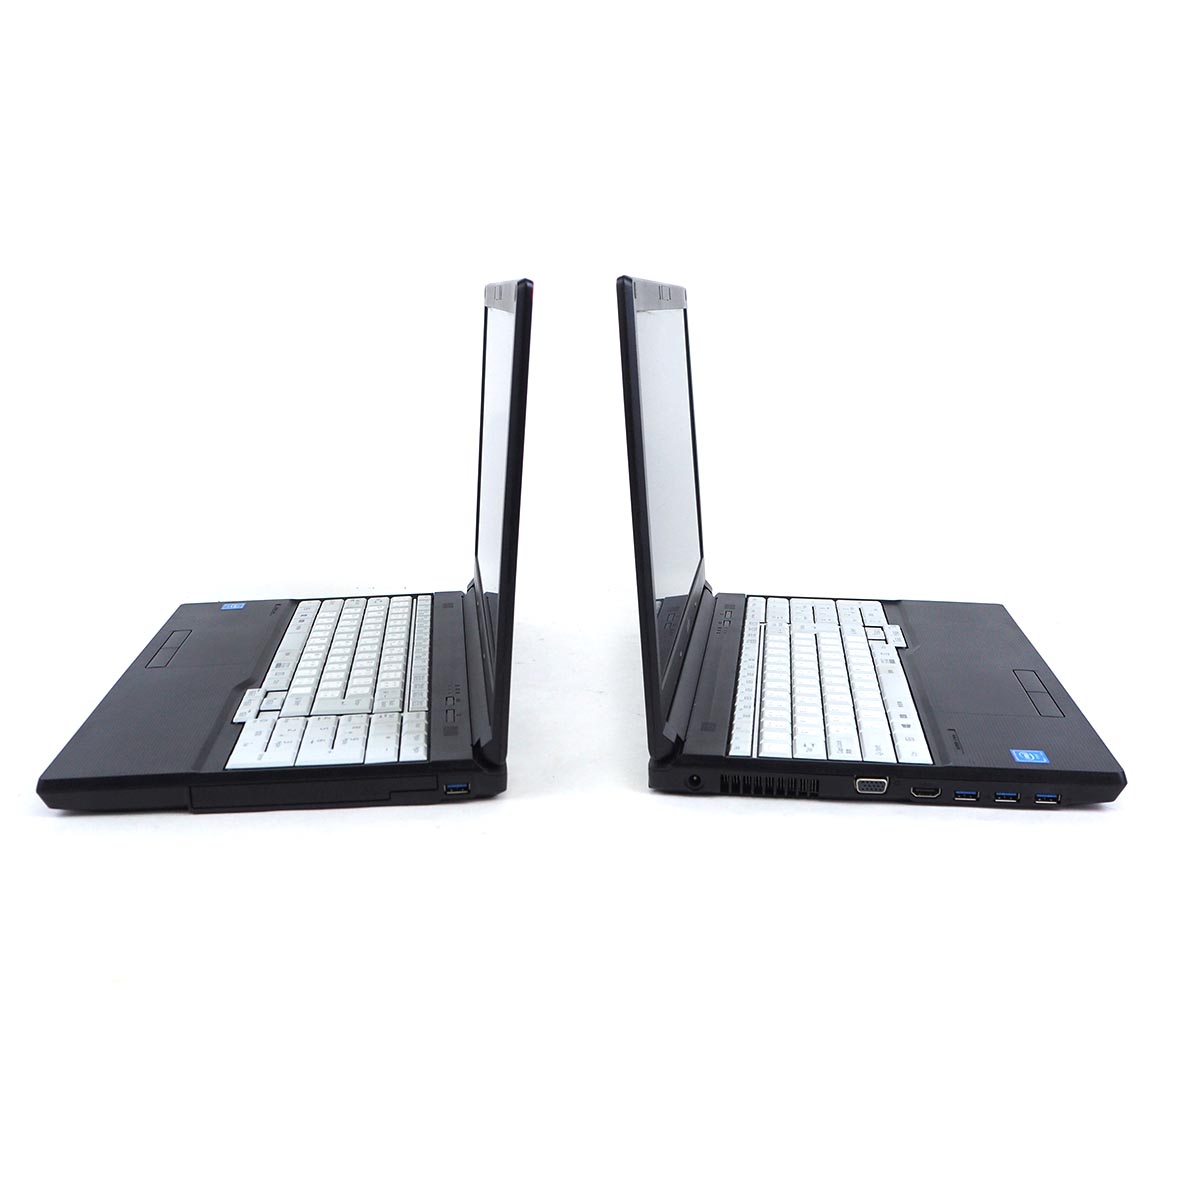 รูปภาพเพิ่มเติมของ โน๊ตบุ๊ค Fu LifeBook A577/R Celeron Gen7 / RAM 4-8GB (DDR4) HDD/SSD หน้าจอ 15.6 นิ้ว คีย์แยก Wifi-Blth ในตัว Refhed laptop used notebook คอมพิวเตอร์ 2022 มีประกัน By Totalsol